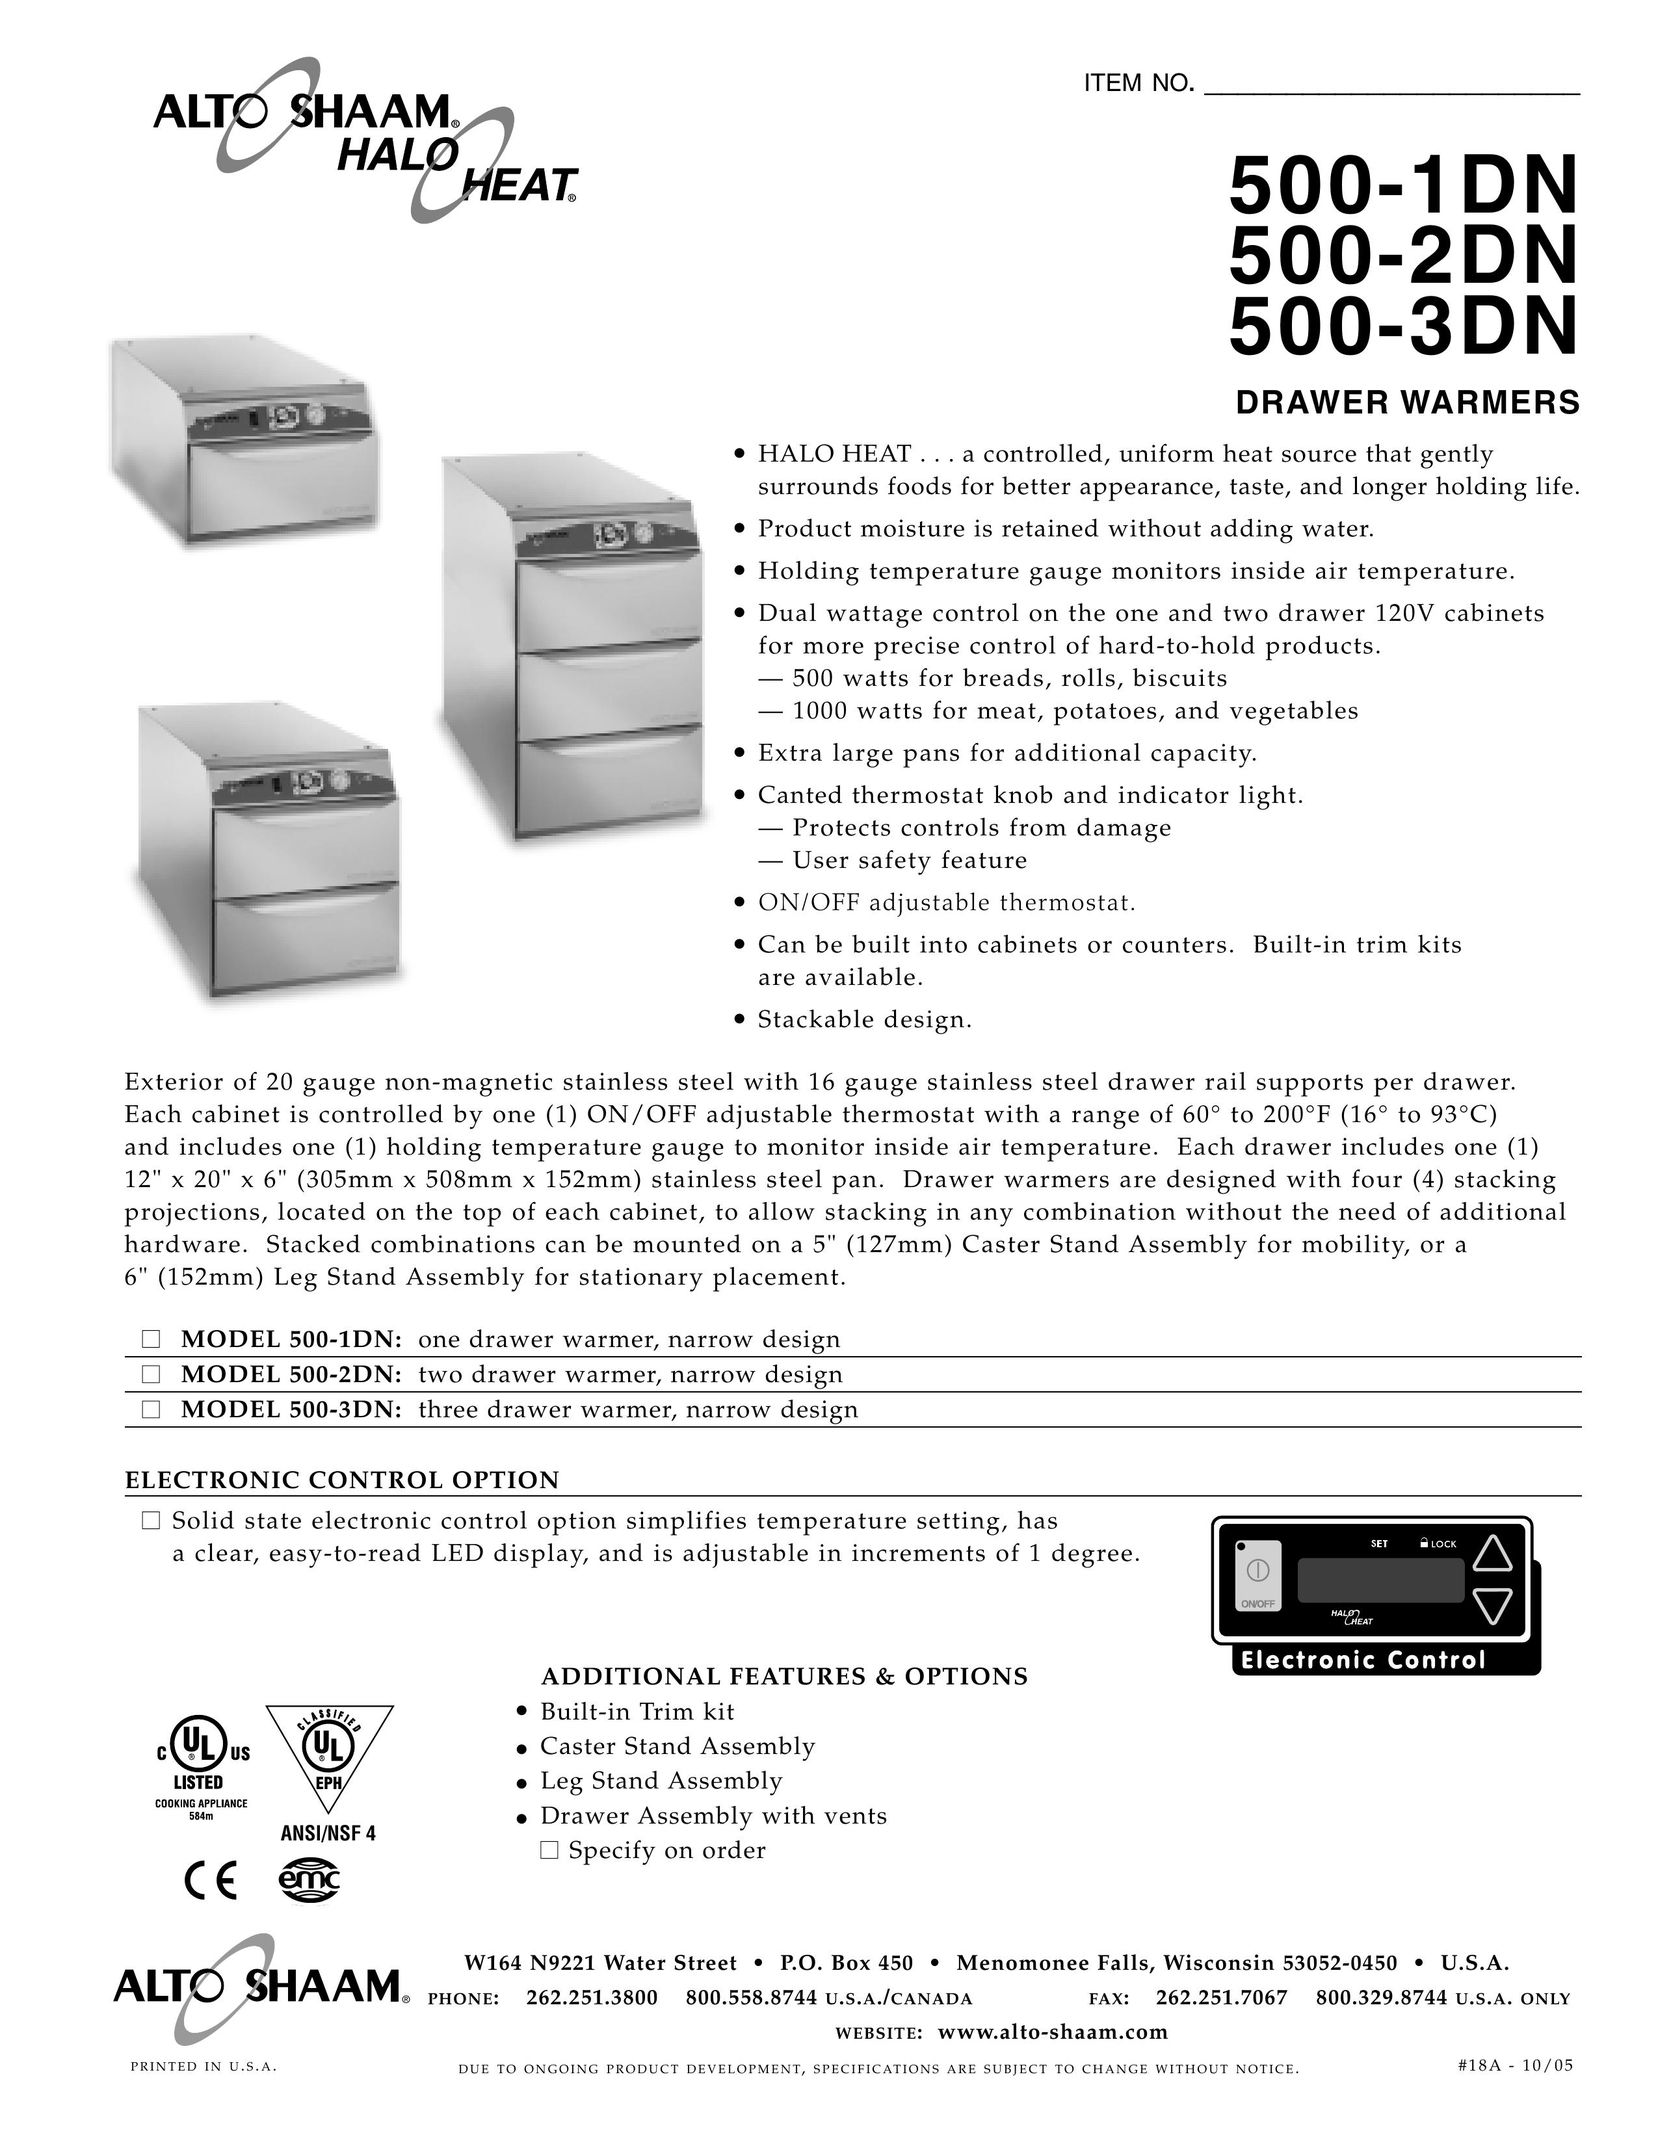 Alto-Shaam 500-3DN Food Warmer User Manual